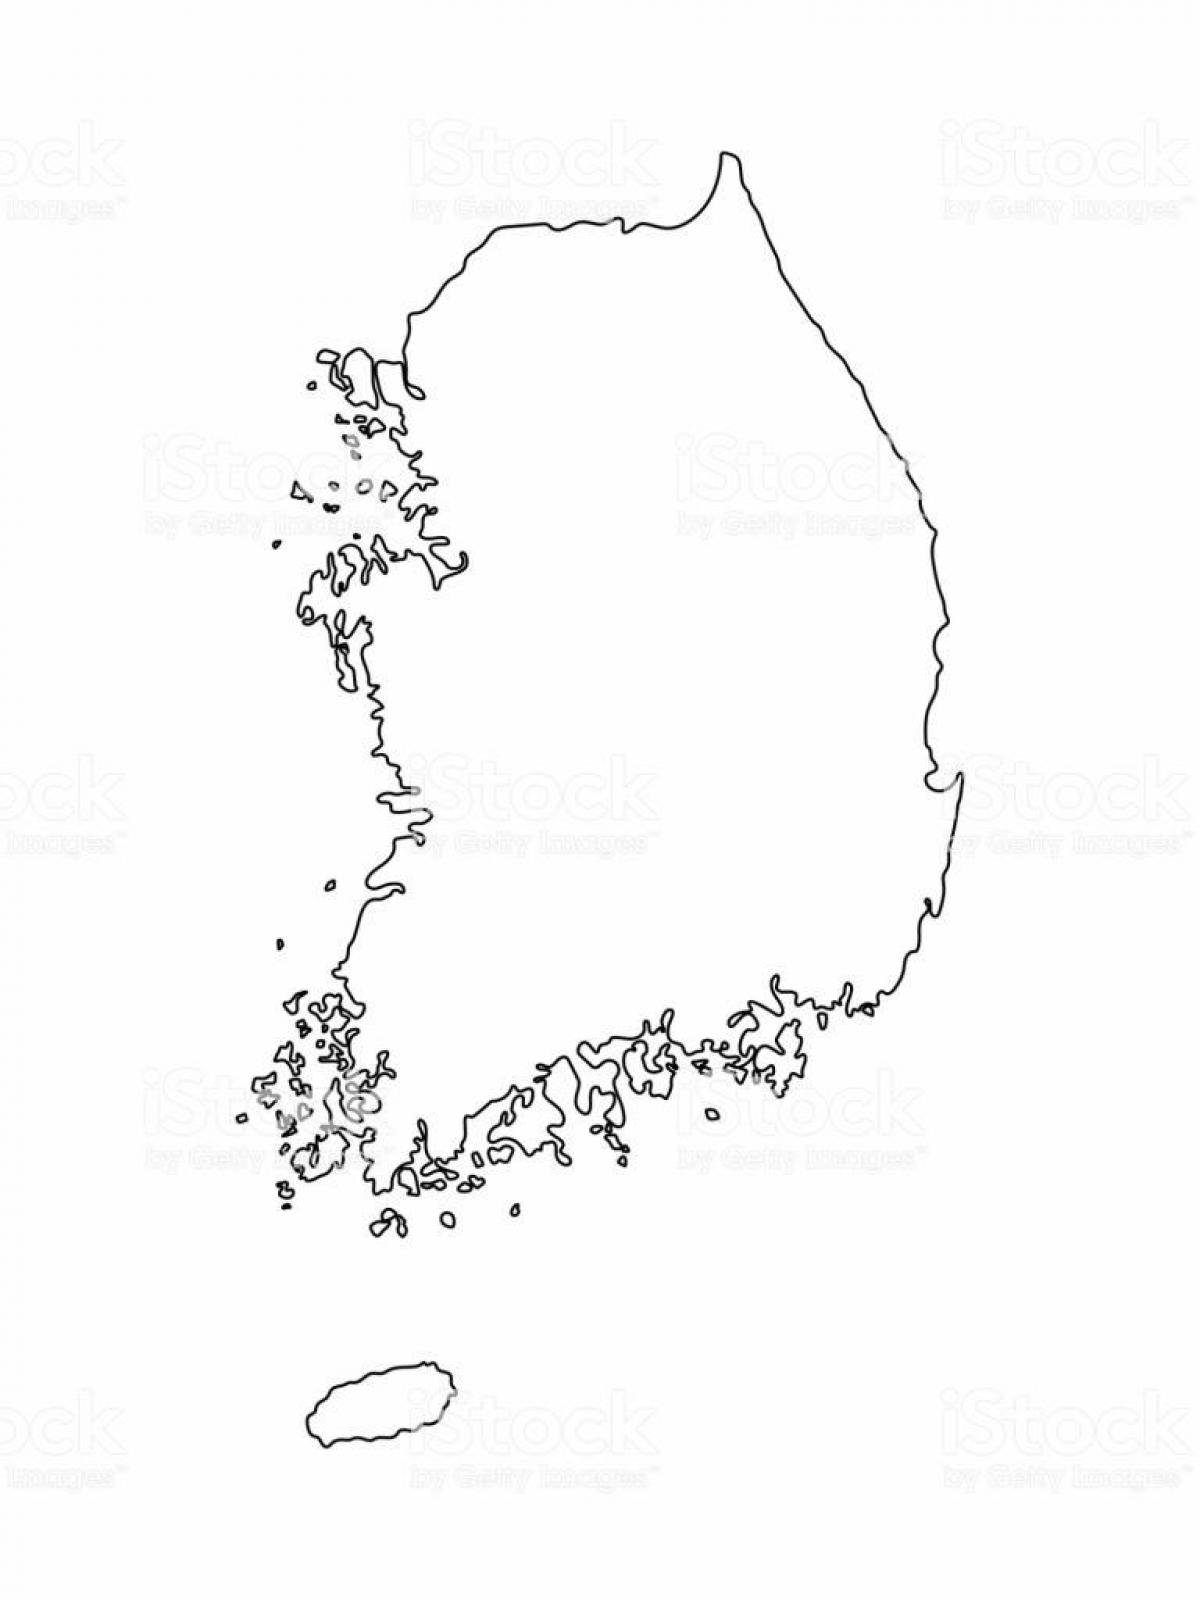 Mapa Vazio da Coreia do Sul (ROK)